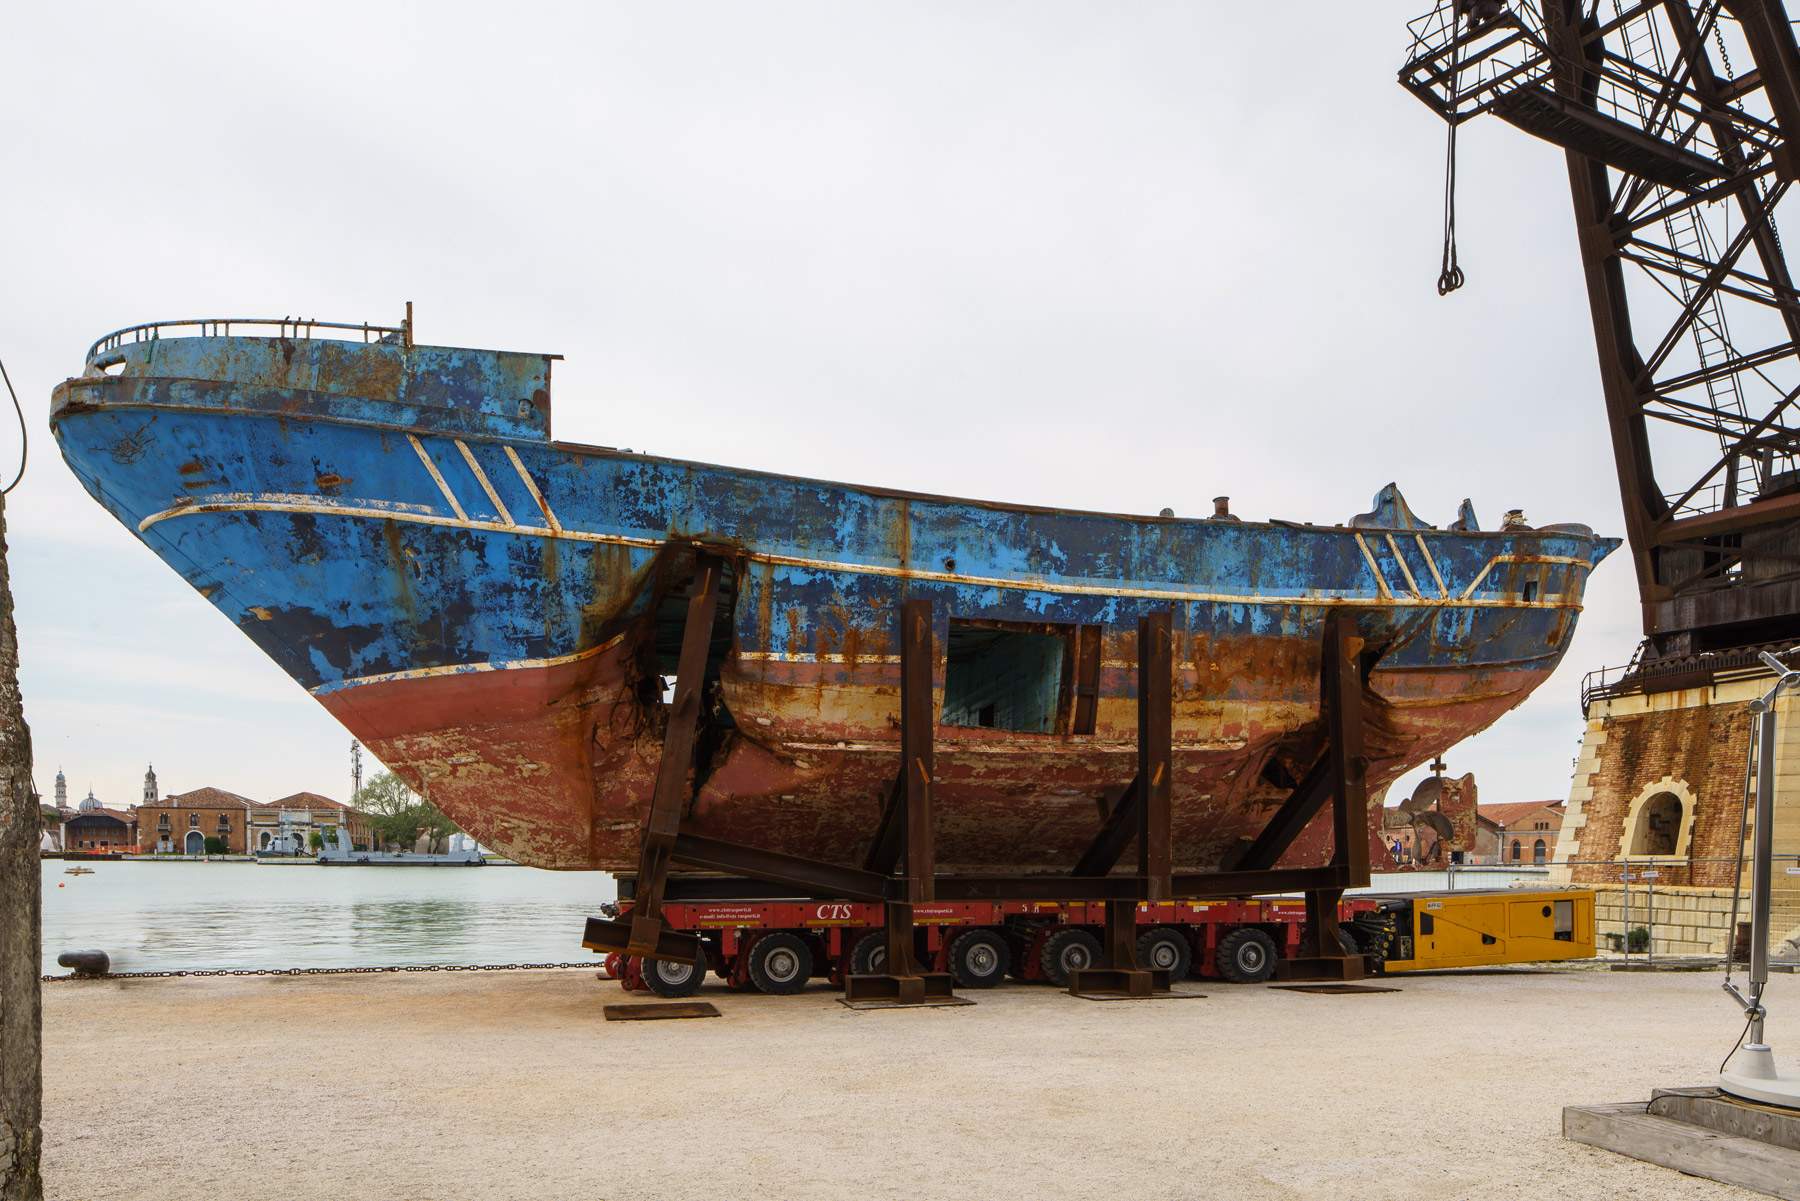 L'épave du naufrage de migrants exposée à la Biennale de Venise 2019 revient en Sicile